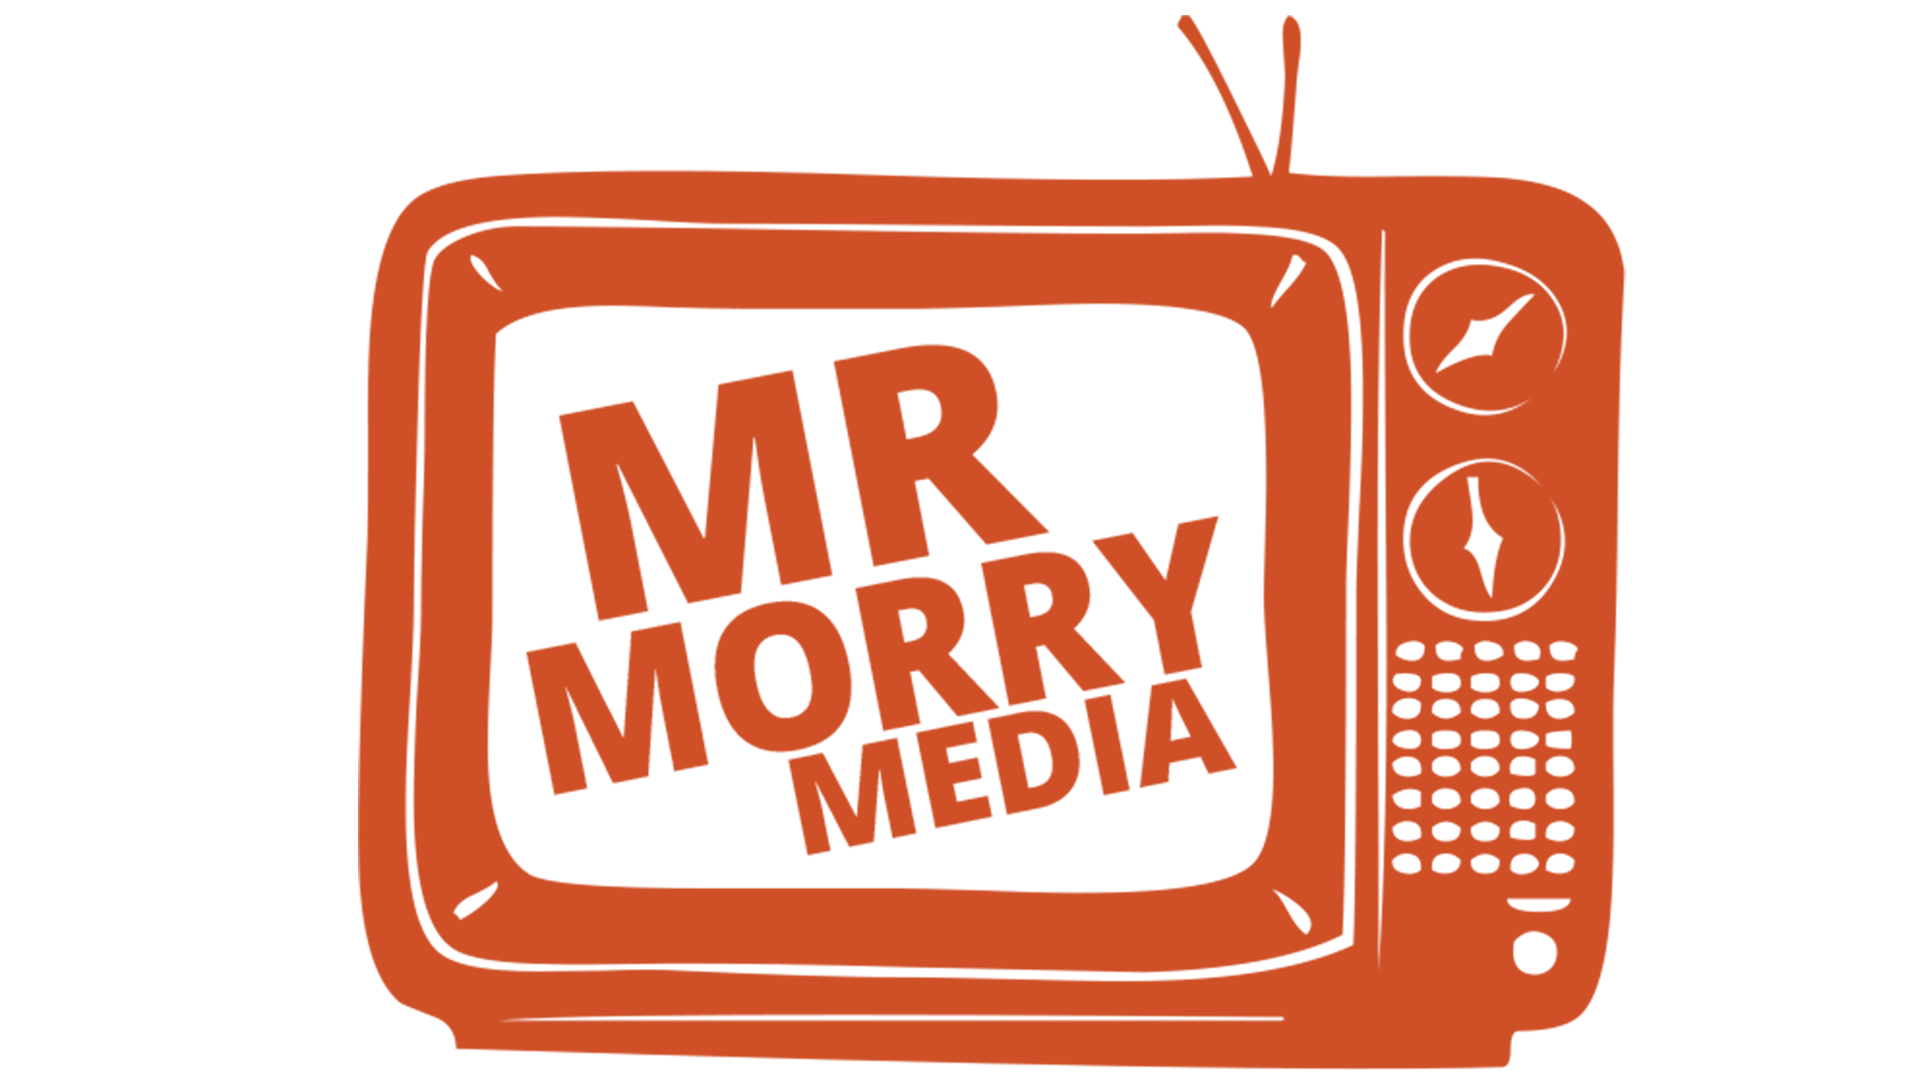 Mr Morry Media